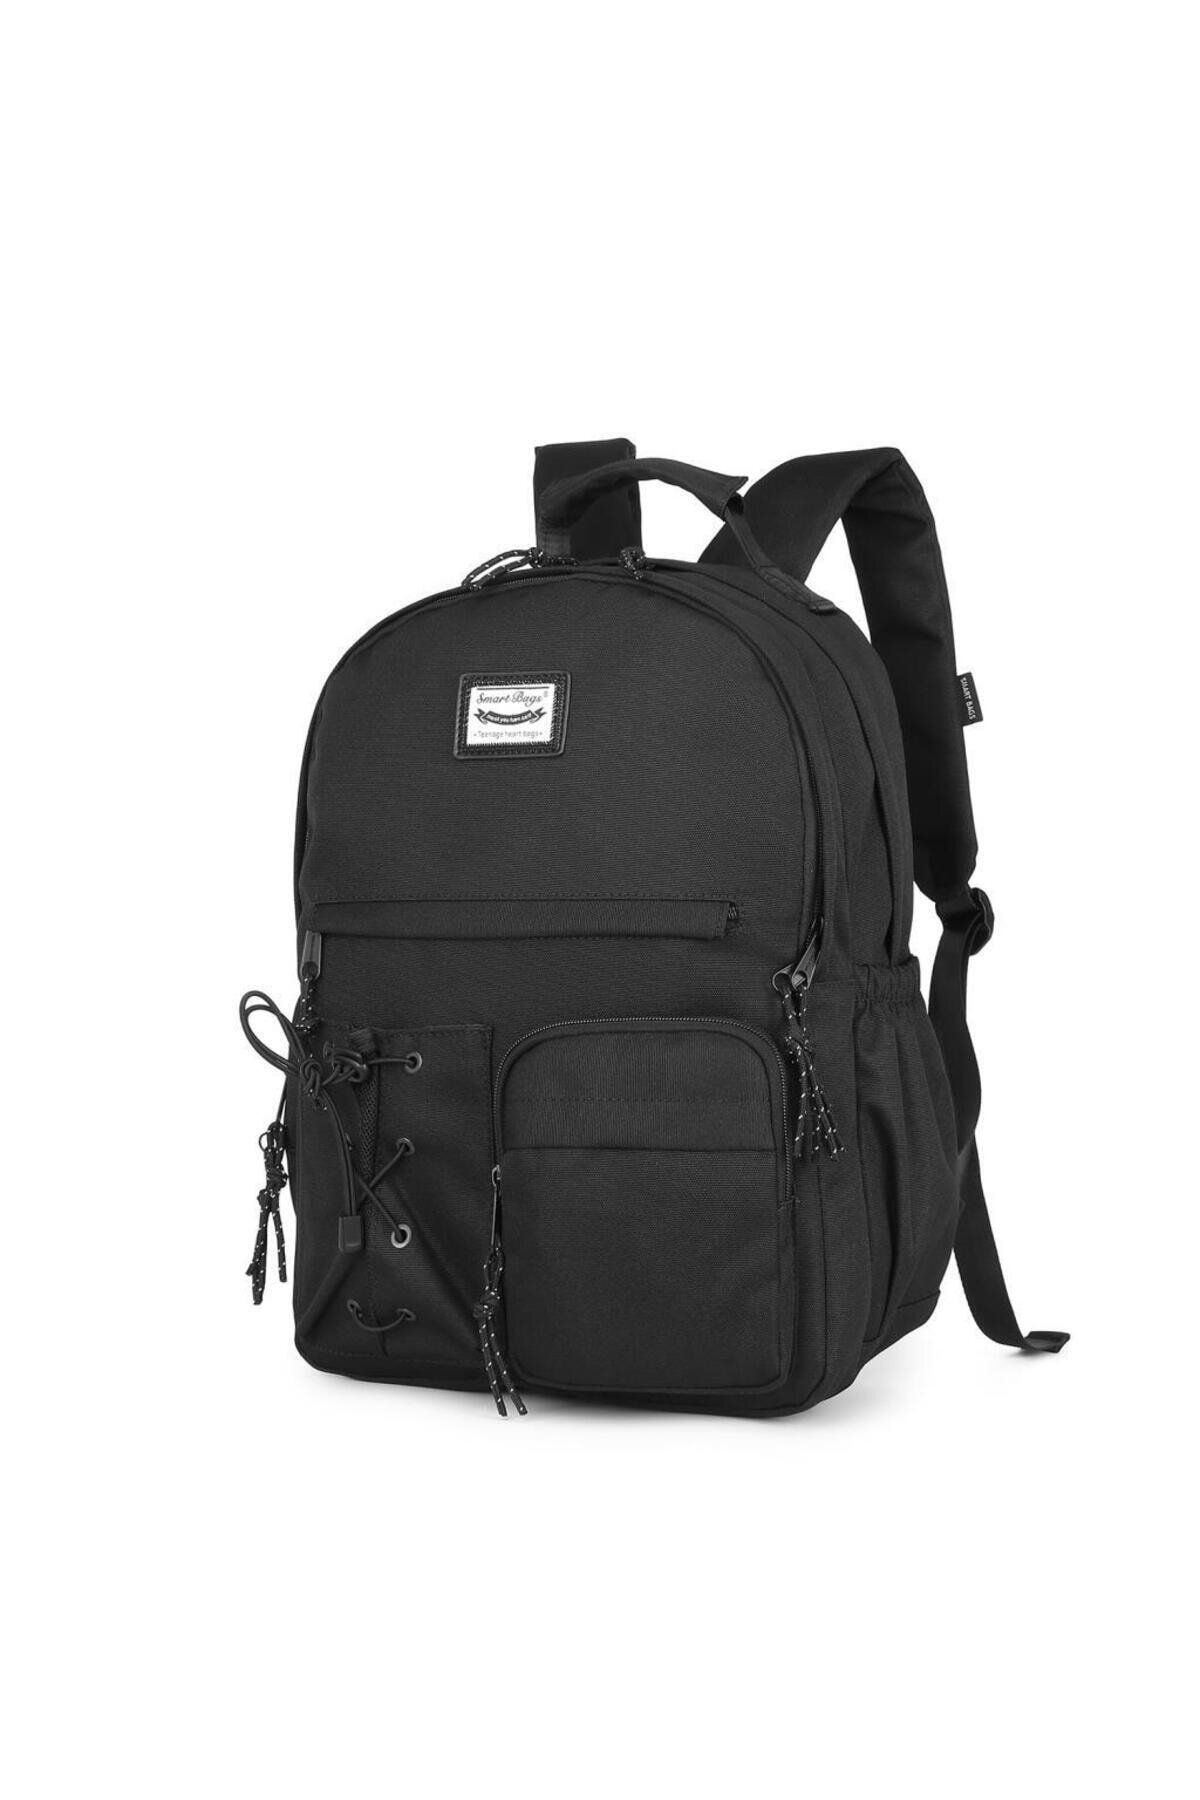 Smart Bags Sırt Çantası Okul Boyu Laptop Gözlü 3205